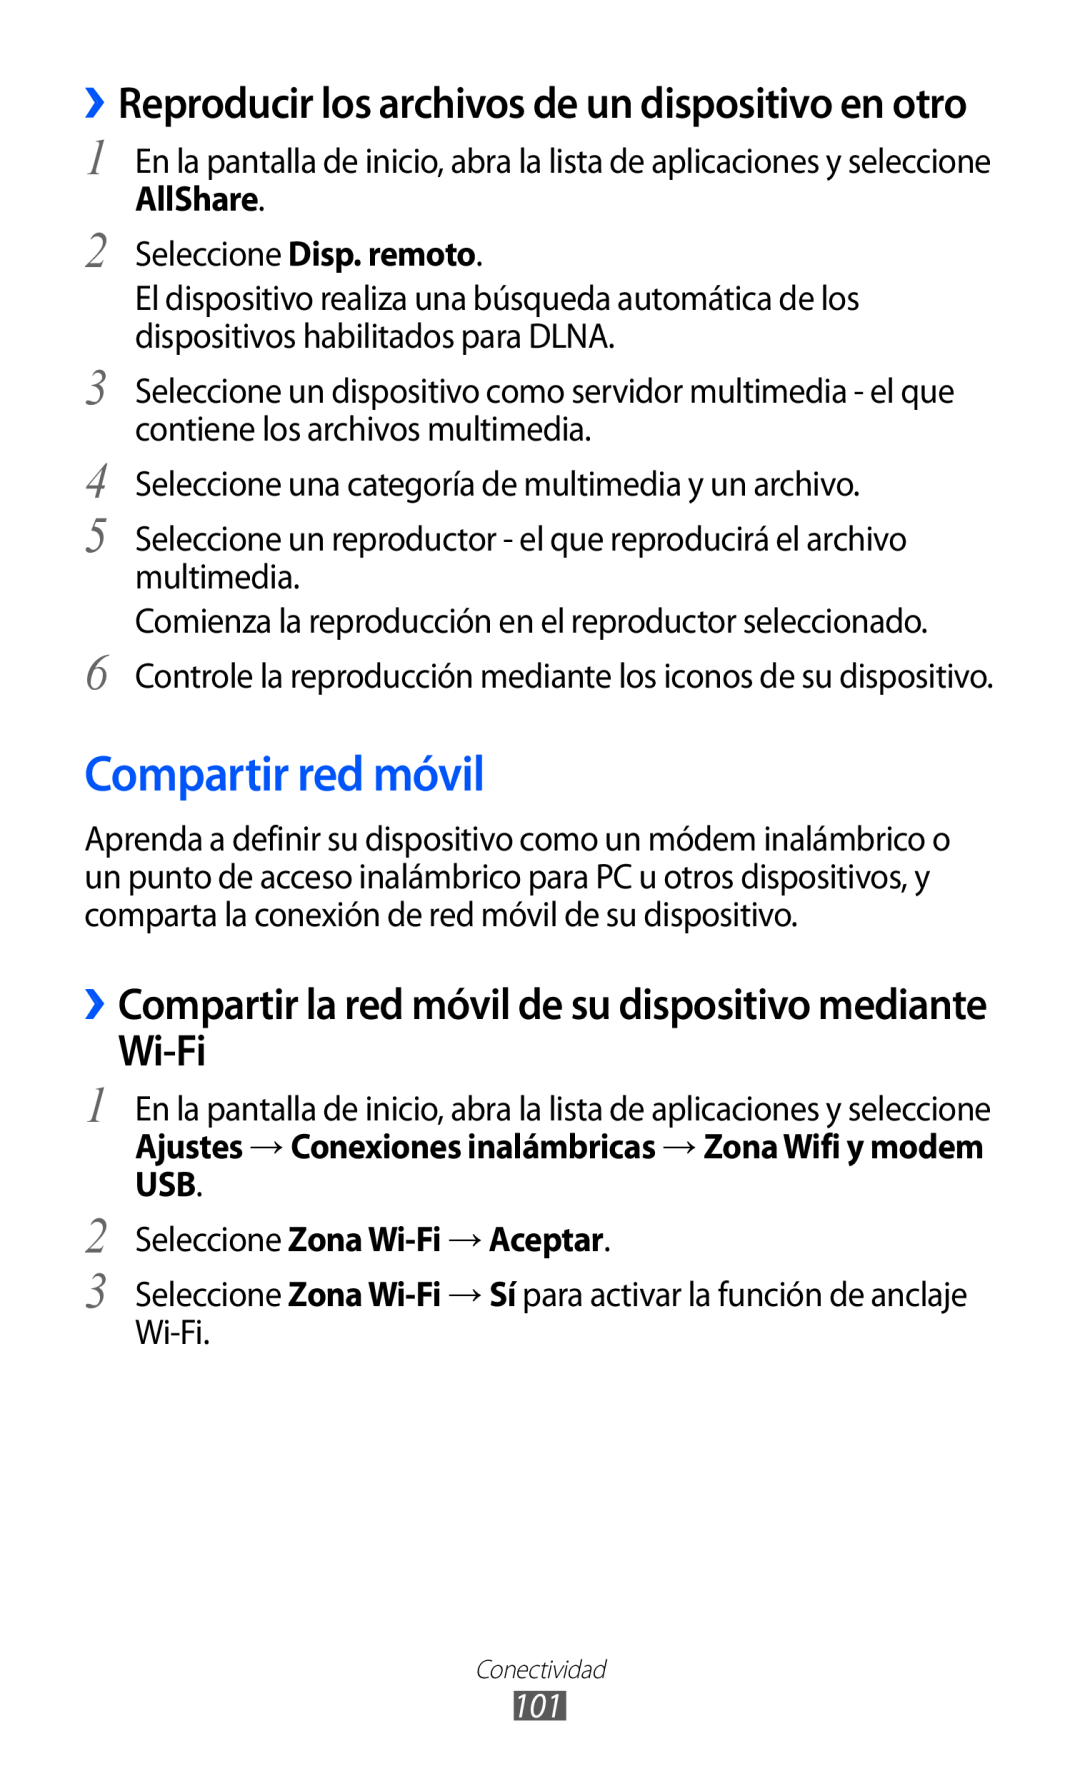 Samsung GT-S6500ZYDCOA manual Compartir red móvil, Wi-Fi, ››Reproducir los archivos de un dispositivo en otro, AllShare 